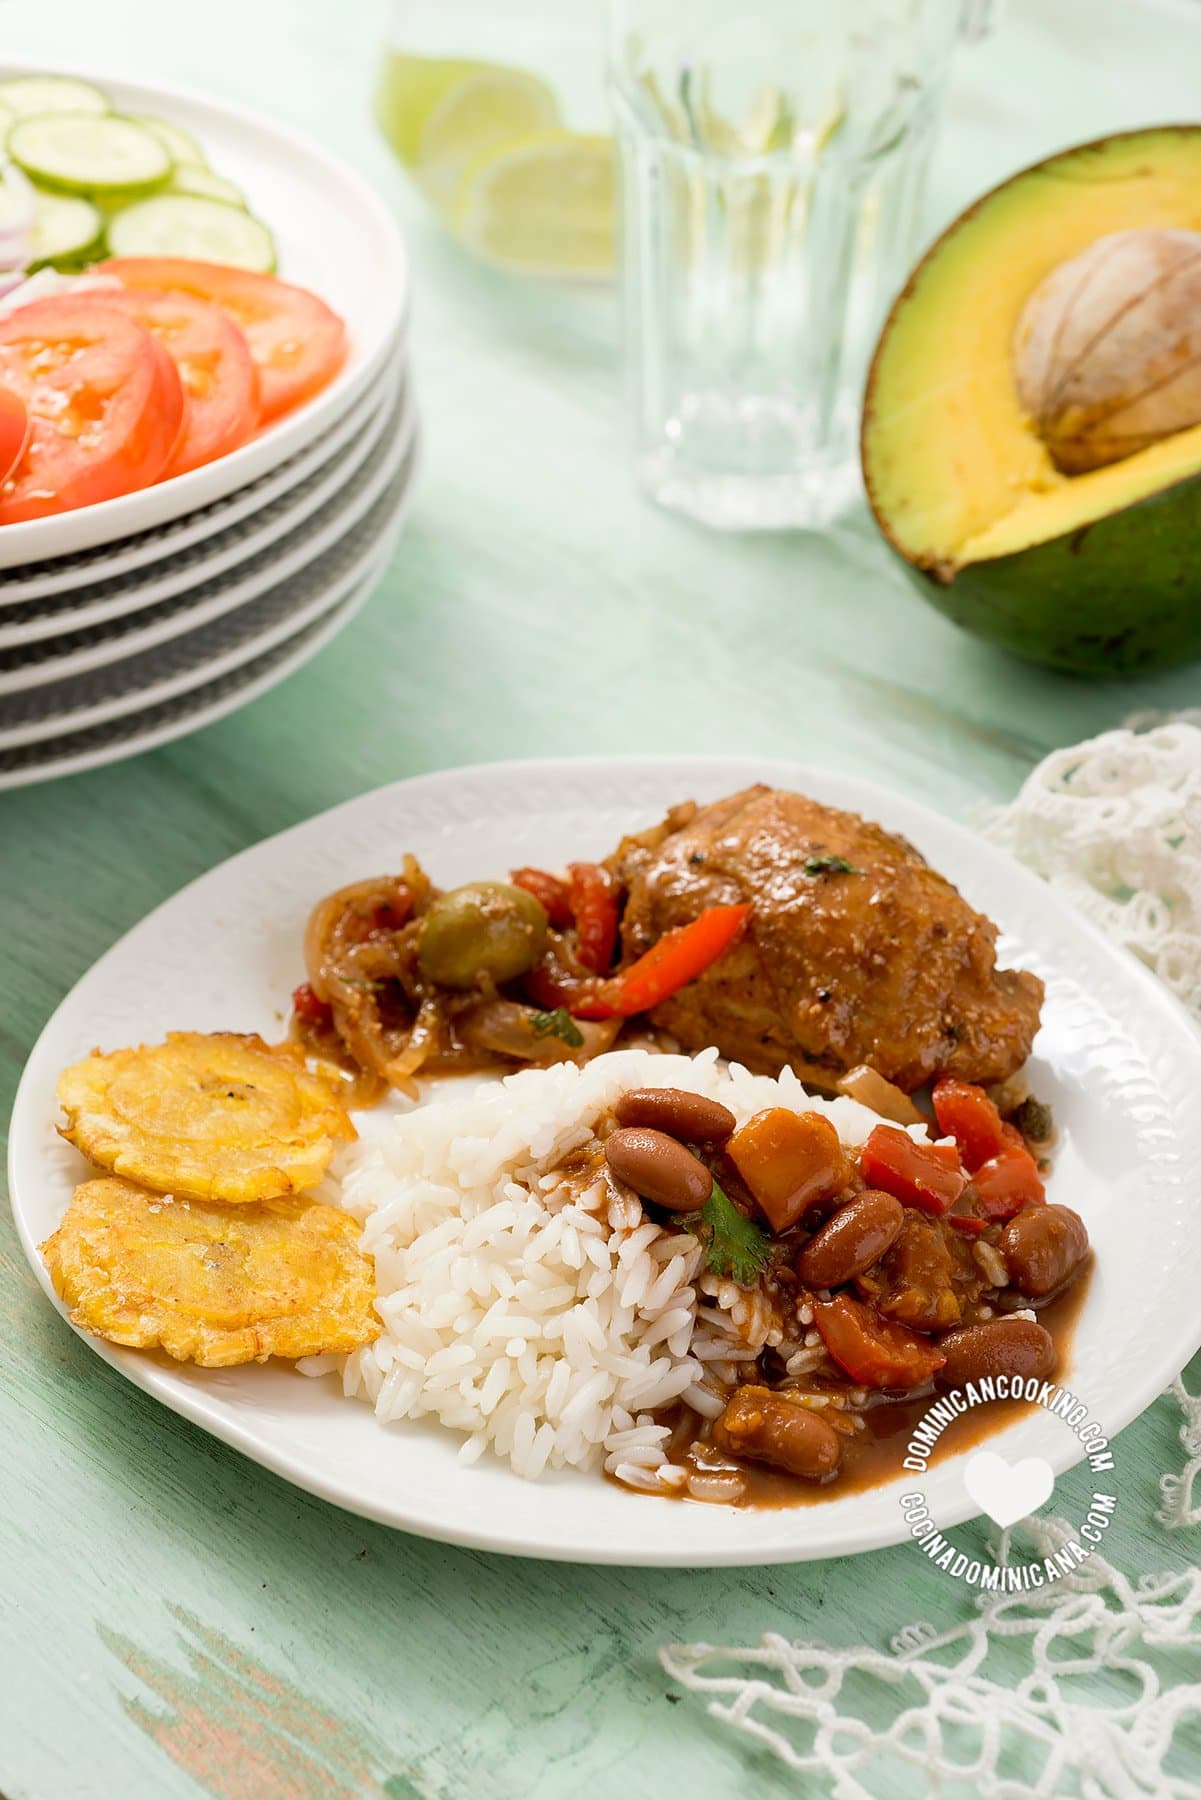 Comida tradicional dominicana: arroz, habichuelas, carne, aguacate y ensalada.